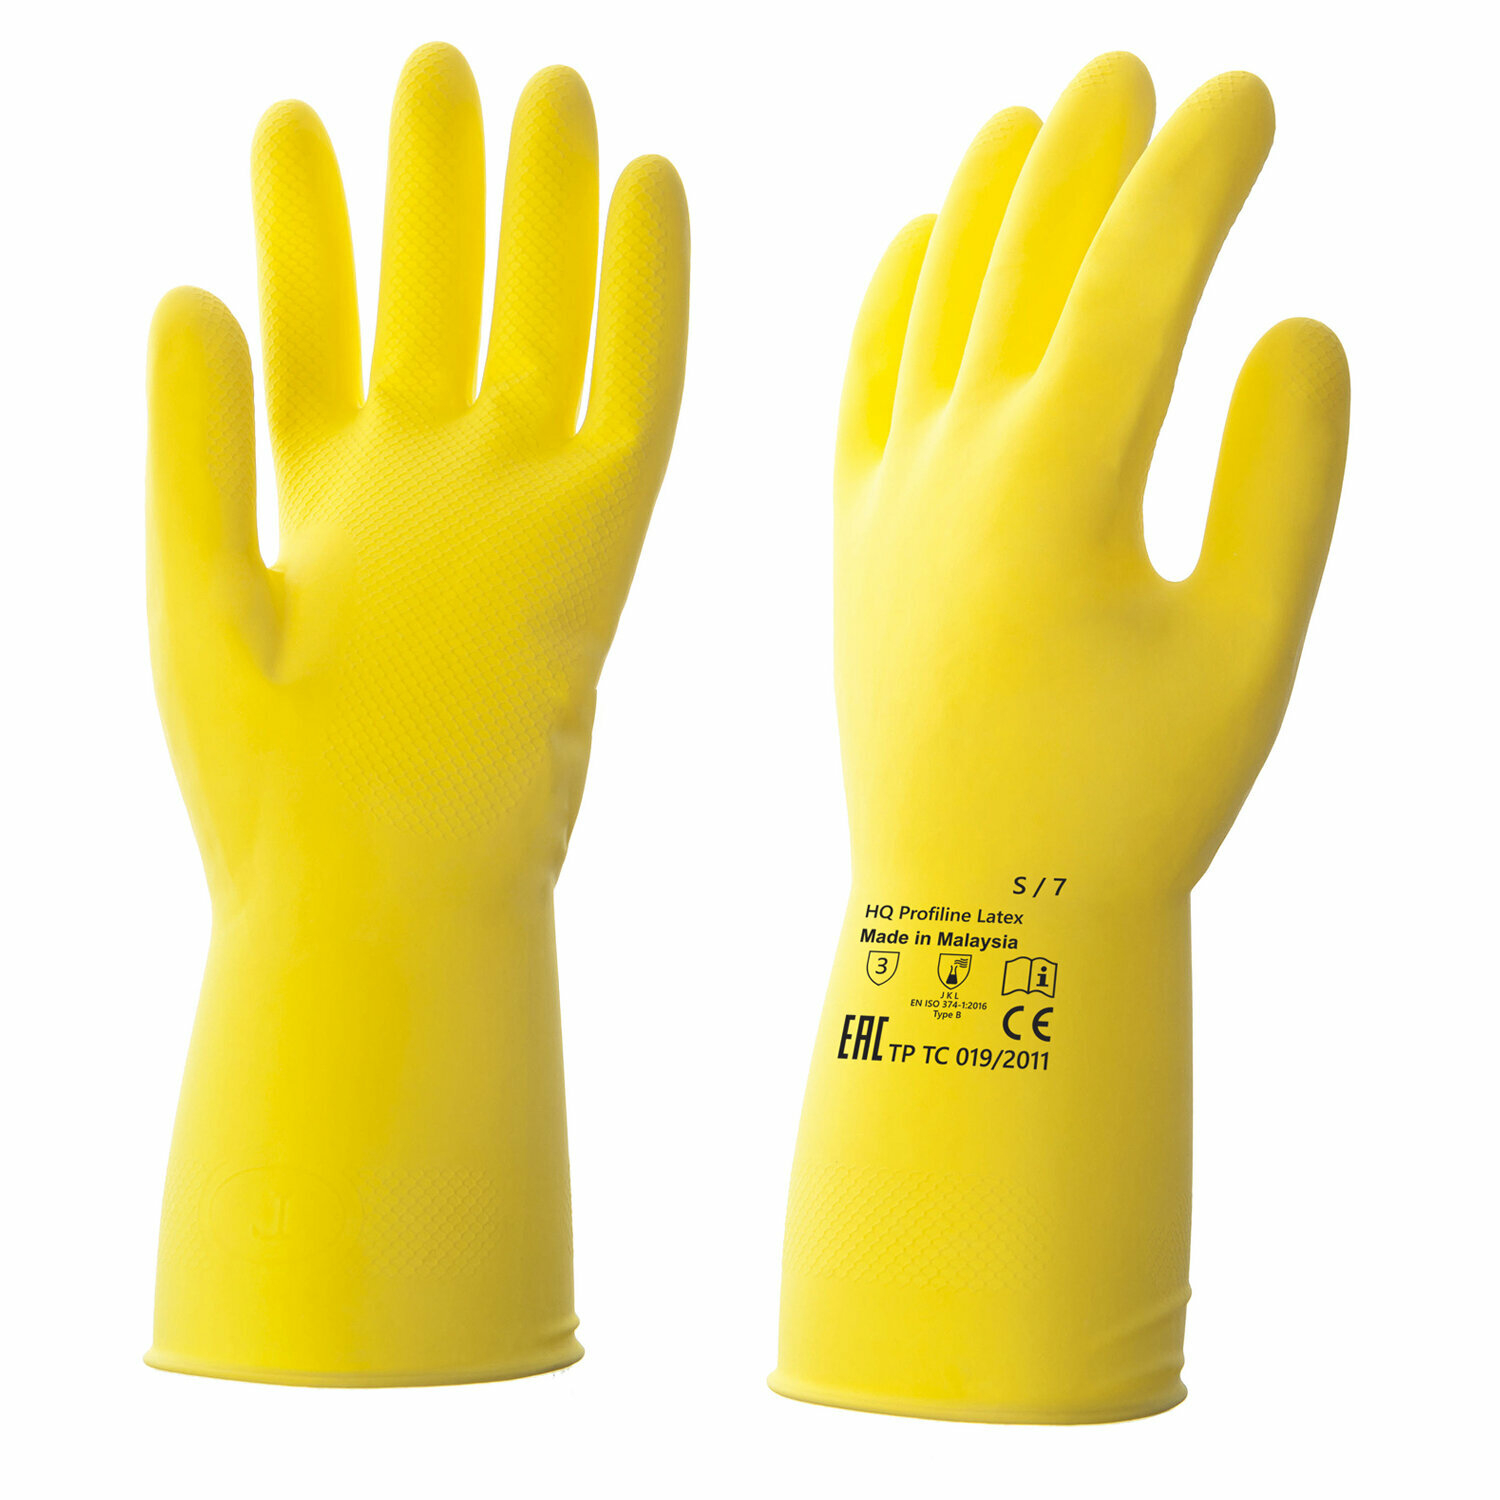 Перчатки латексные КЩС, прочные, х/б напыление, размер 7 S, малый, желтые, HQ Profiline, 73581